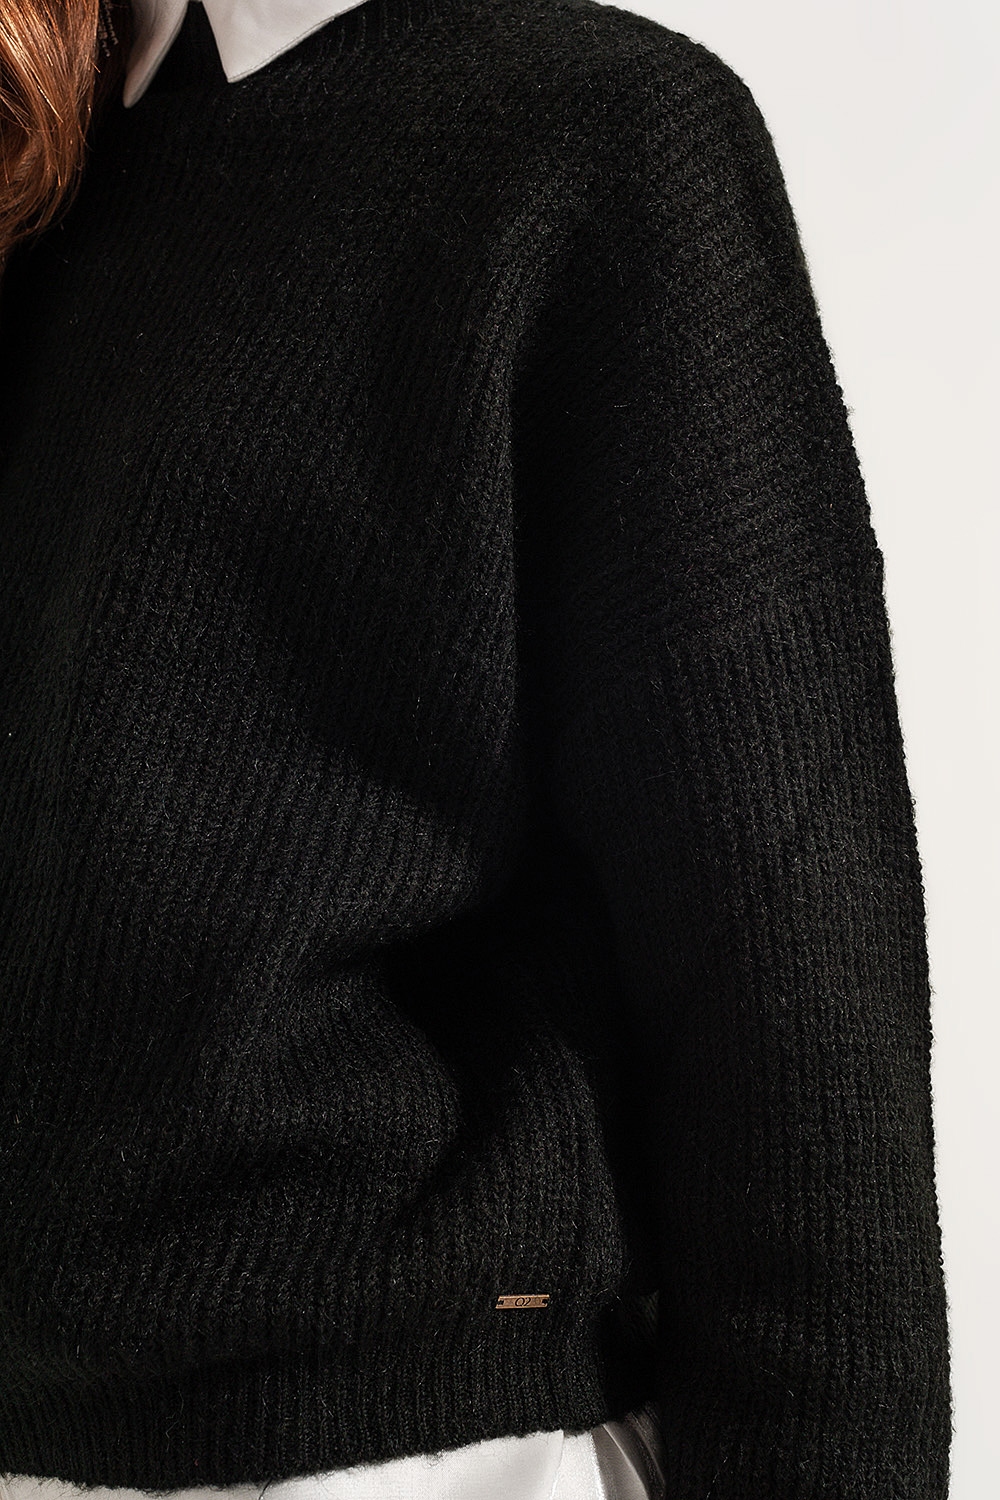 Jersey negro con cuello subido de punto